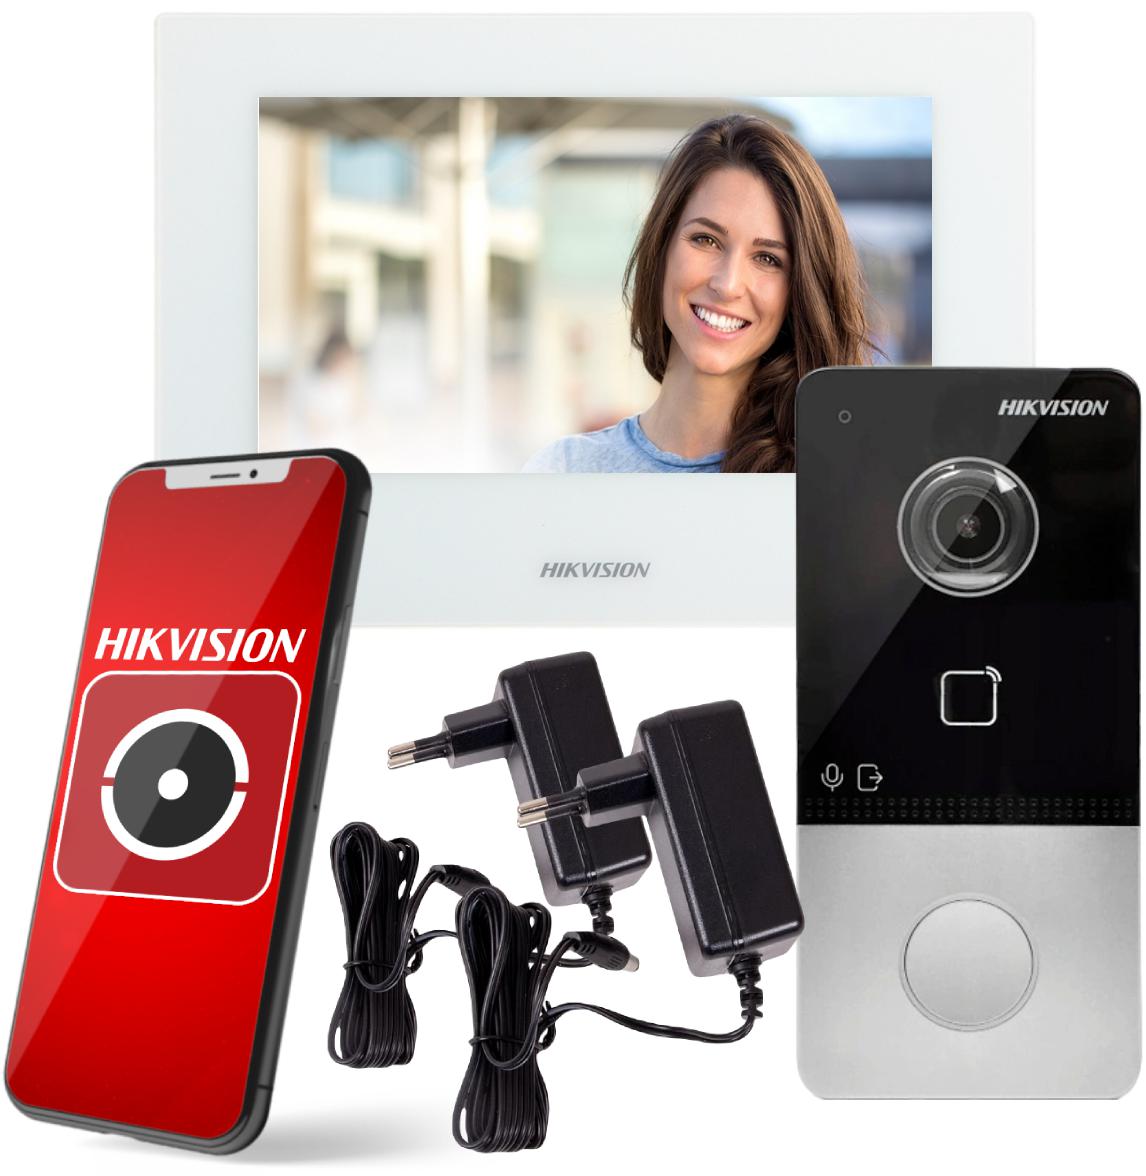 Najważniejsze cechy 1-rodzinnego zestawu wideodomofonowego HikVision KIT-IP-PL603-W: